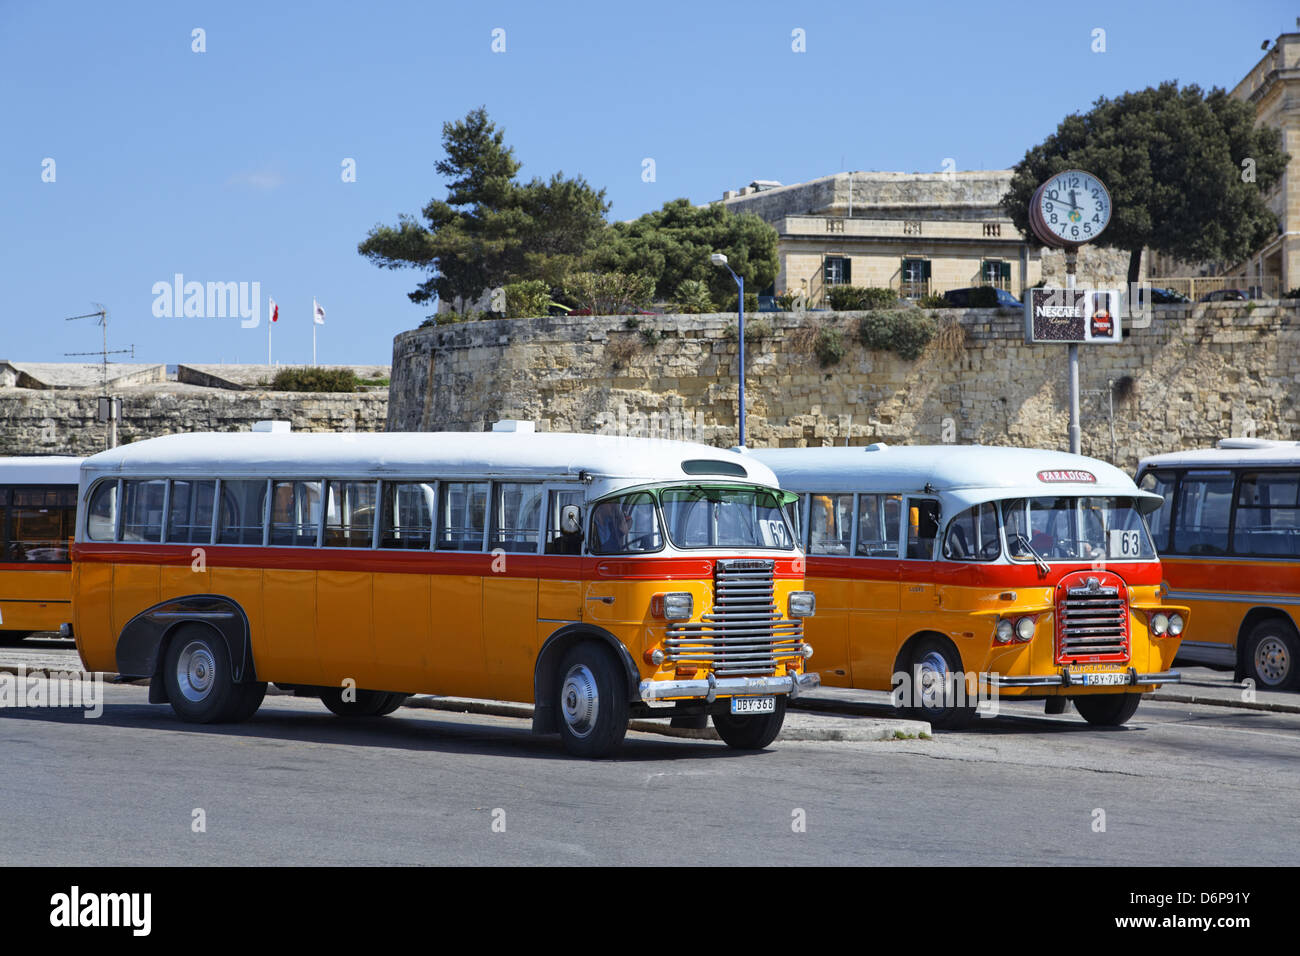 Malta, Valletta, Oldtimer Bus friedlich, Harmonisch, Stock Photo